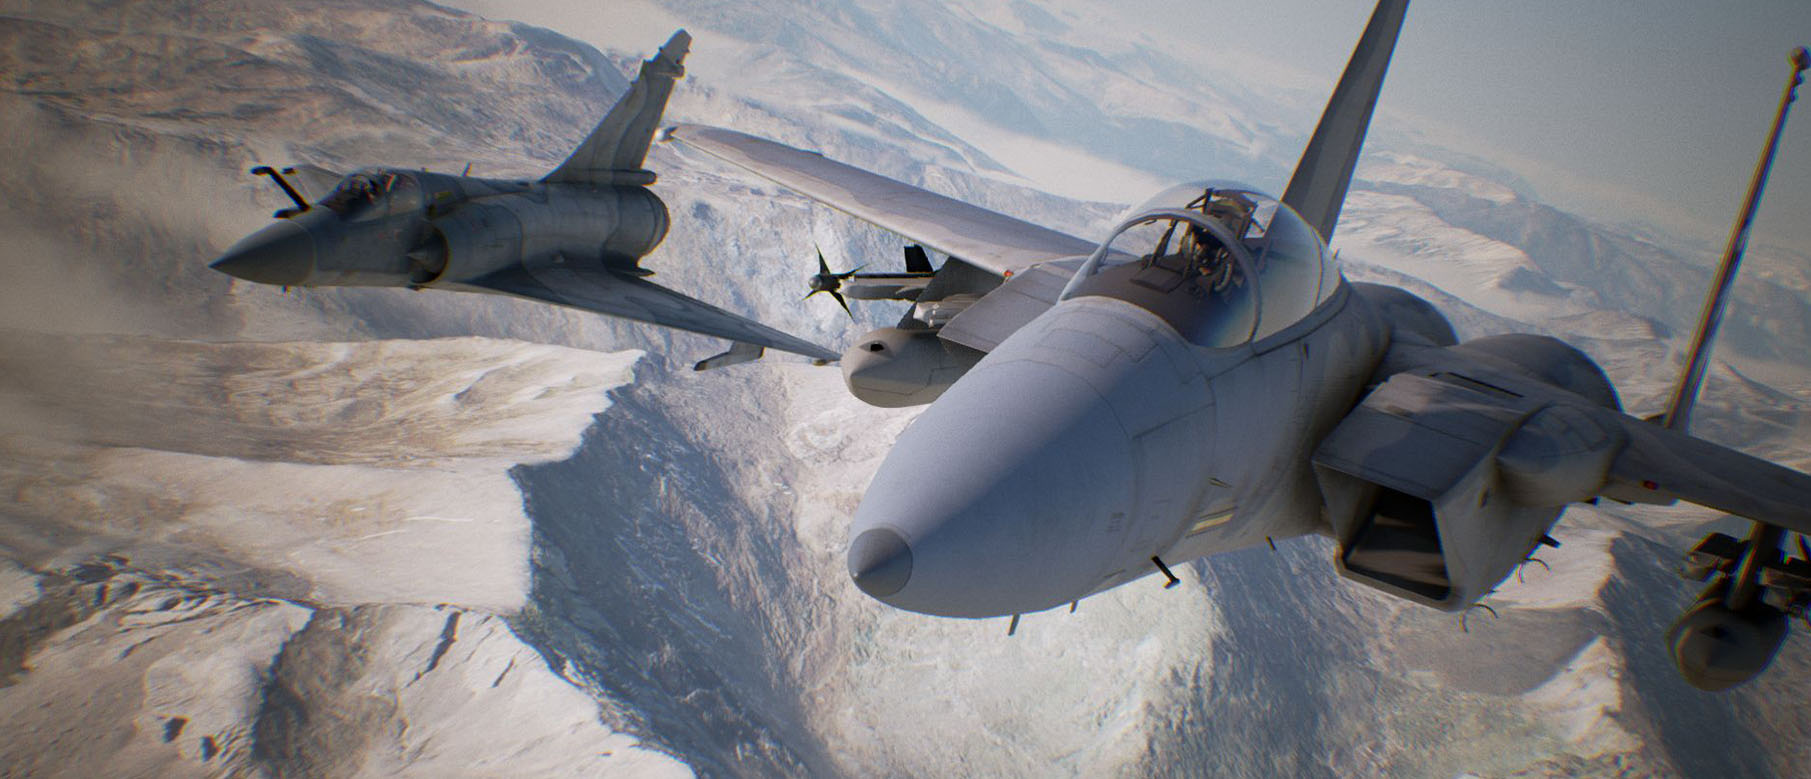 Изображение к Первый геймплей Ace Combat 7 с поддержкой PS VR